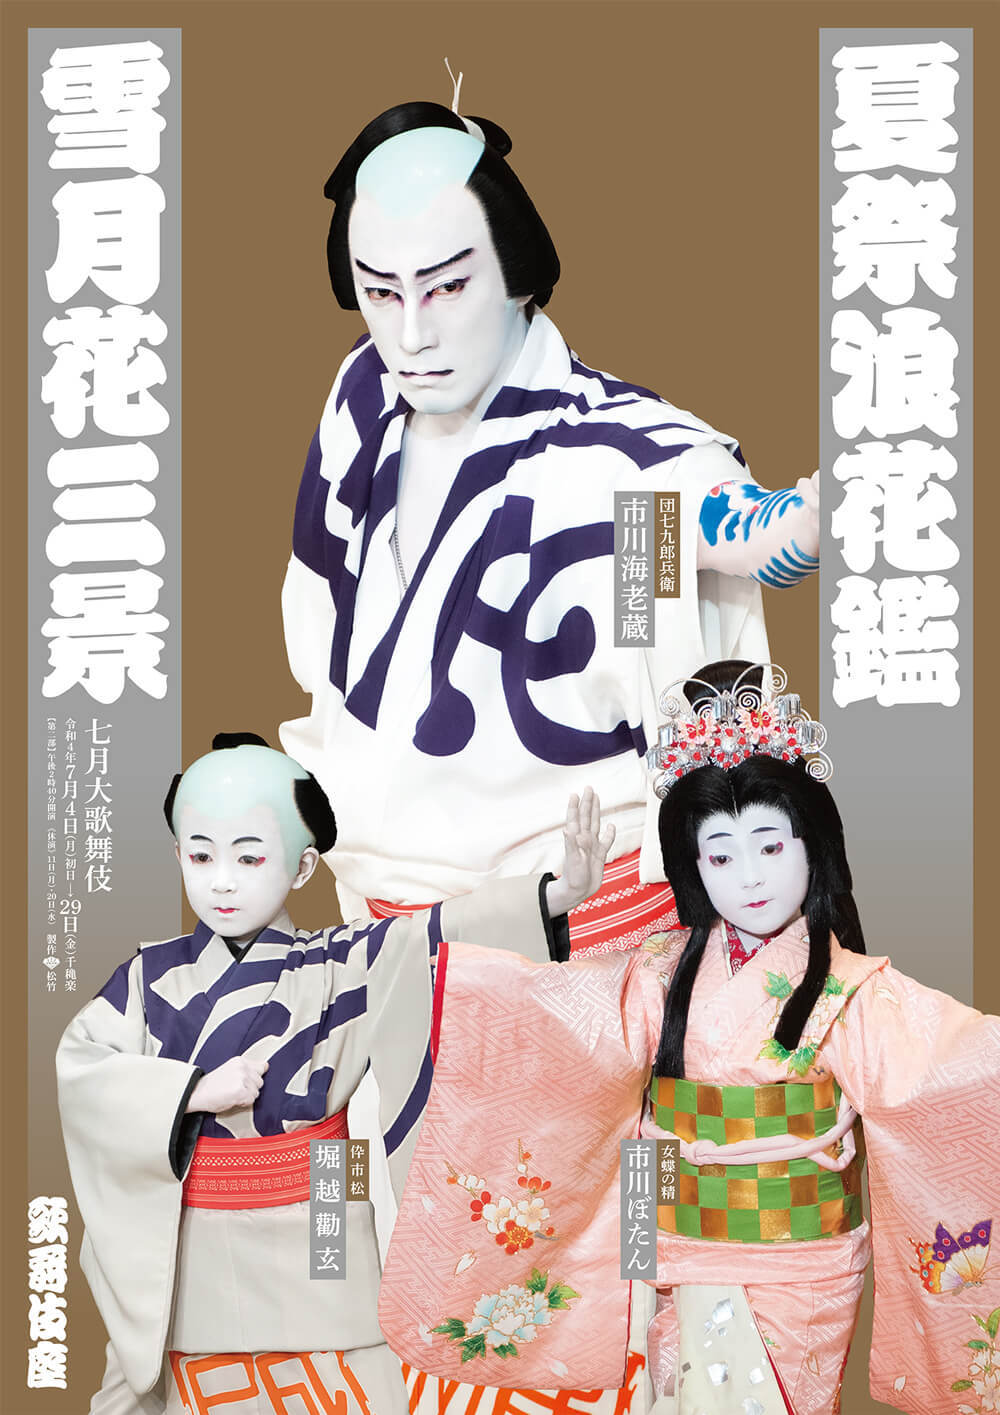 歌舞伎座「七月大歌舞伎」第二部の特別ポスター